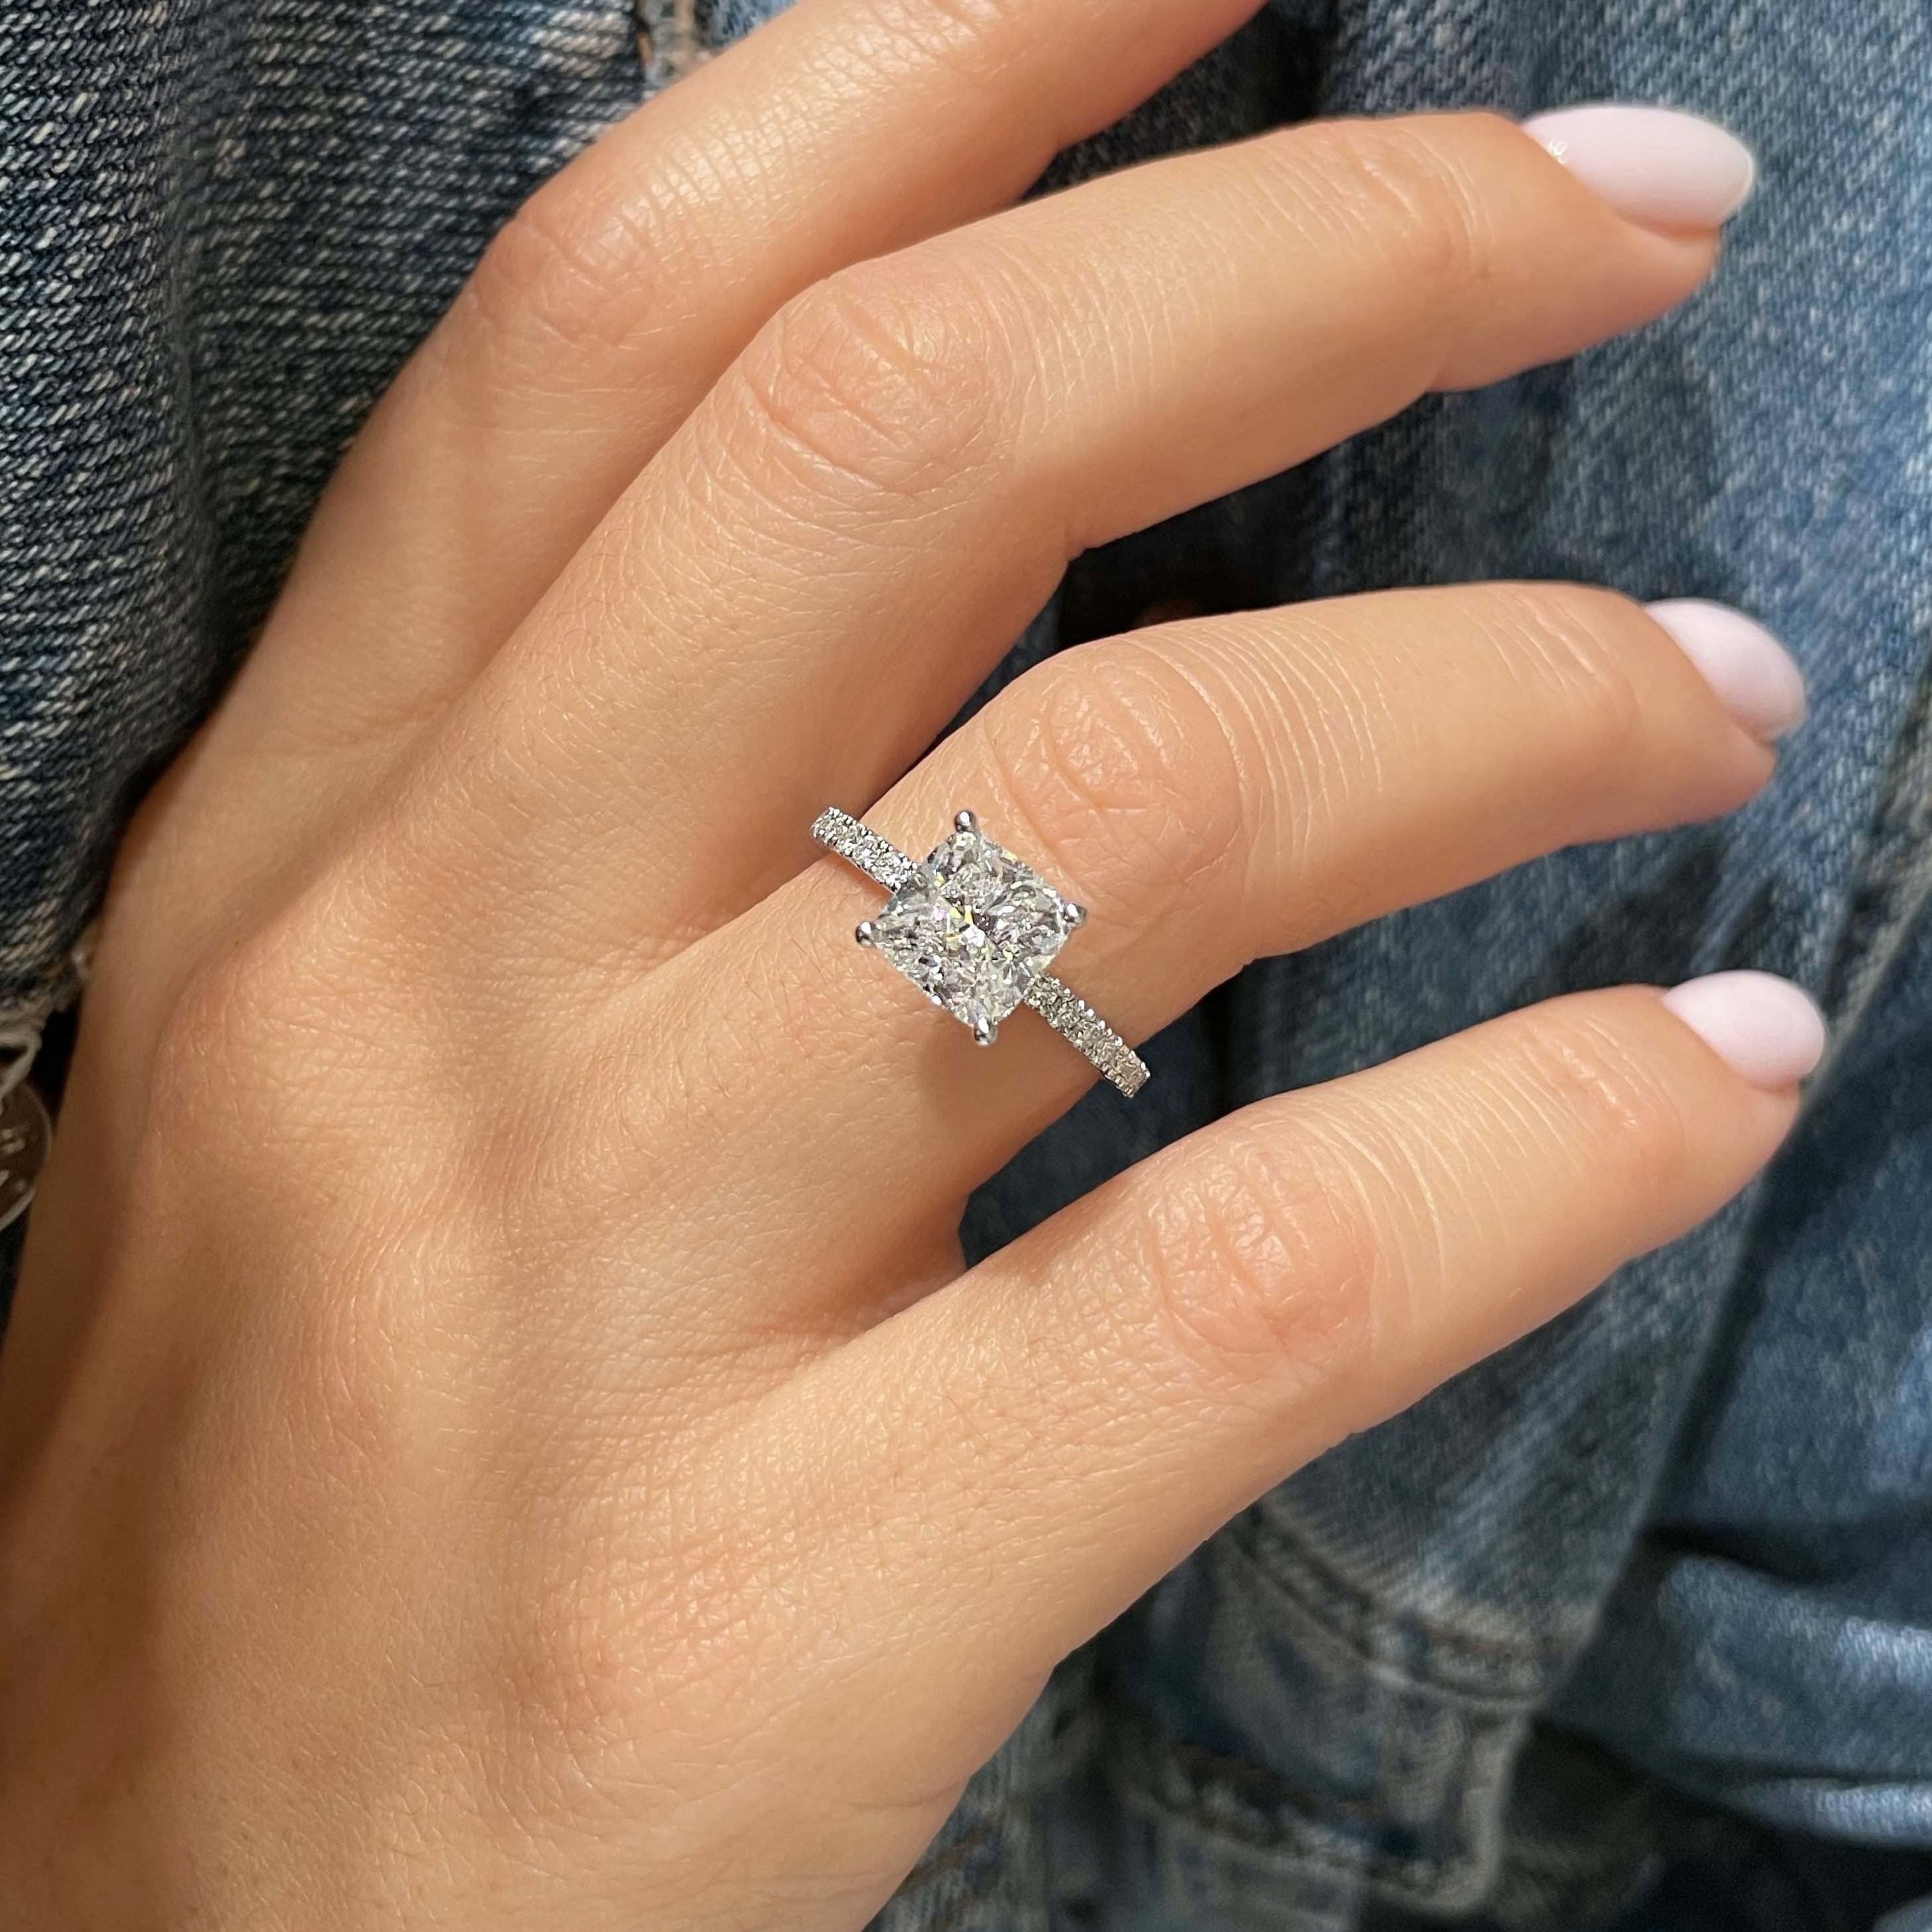 Madeline Diamond Engagement Ring -14K White Gold